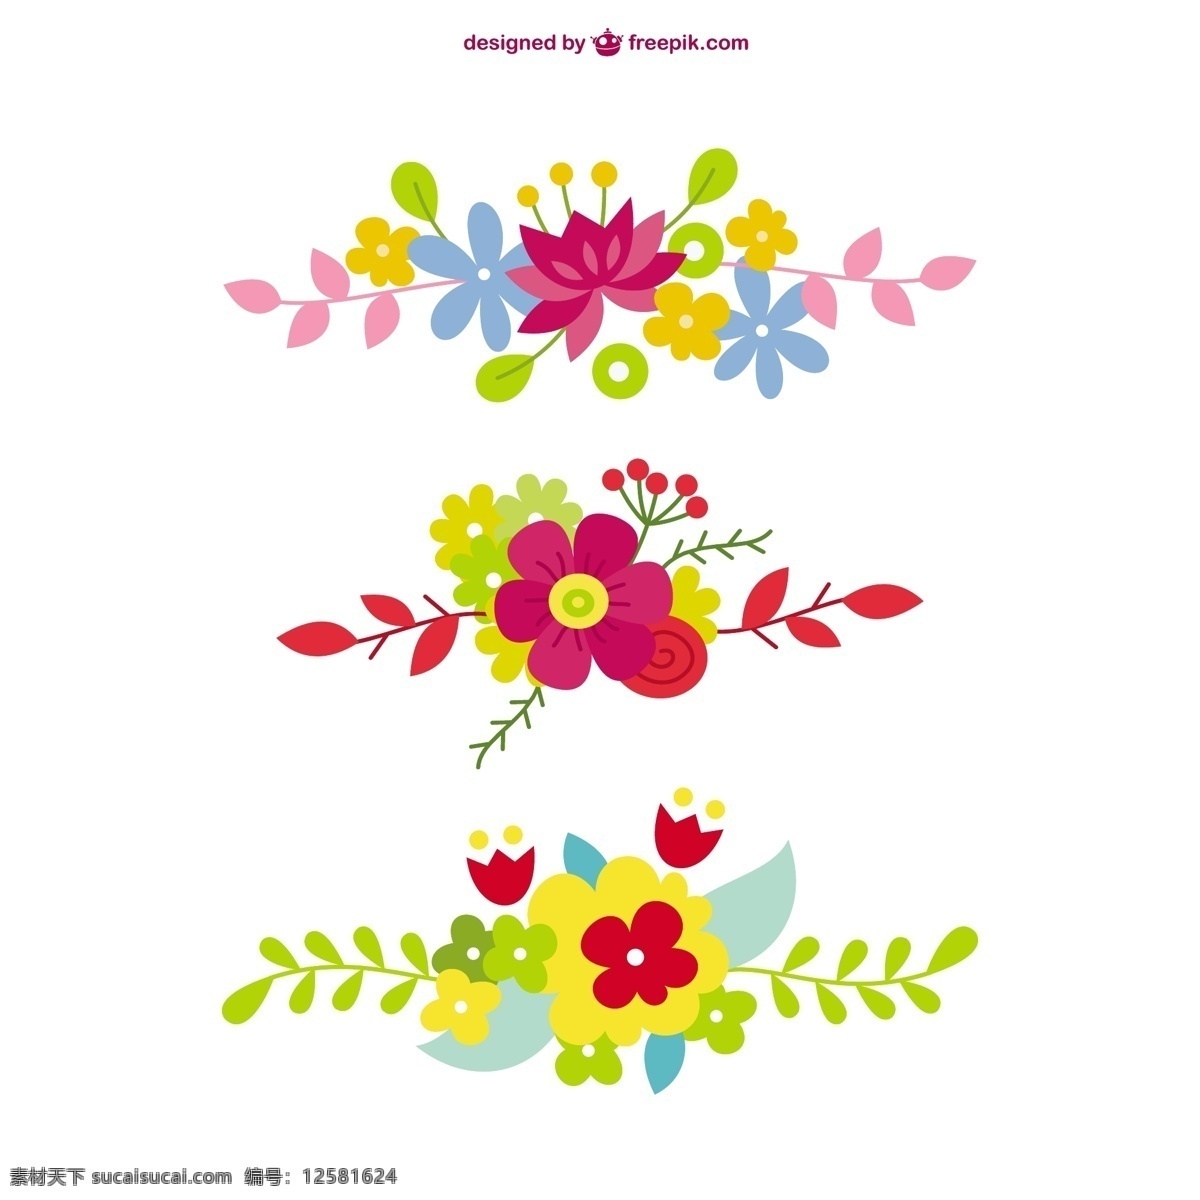 花饰 花卉 夏季 卡片 模板 弹簧 图形 图形设计 植物 装饰 绘画 自然 元素 插图 设计元素 花卉饰品 白色